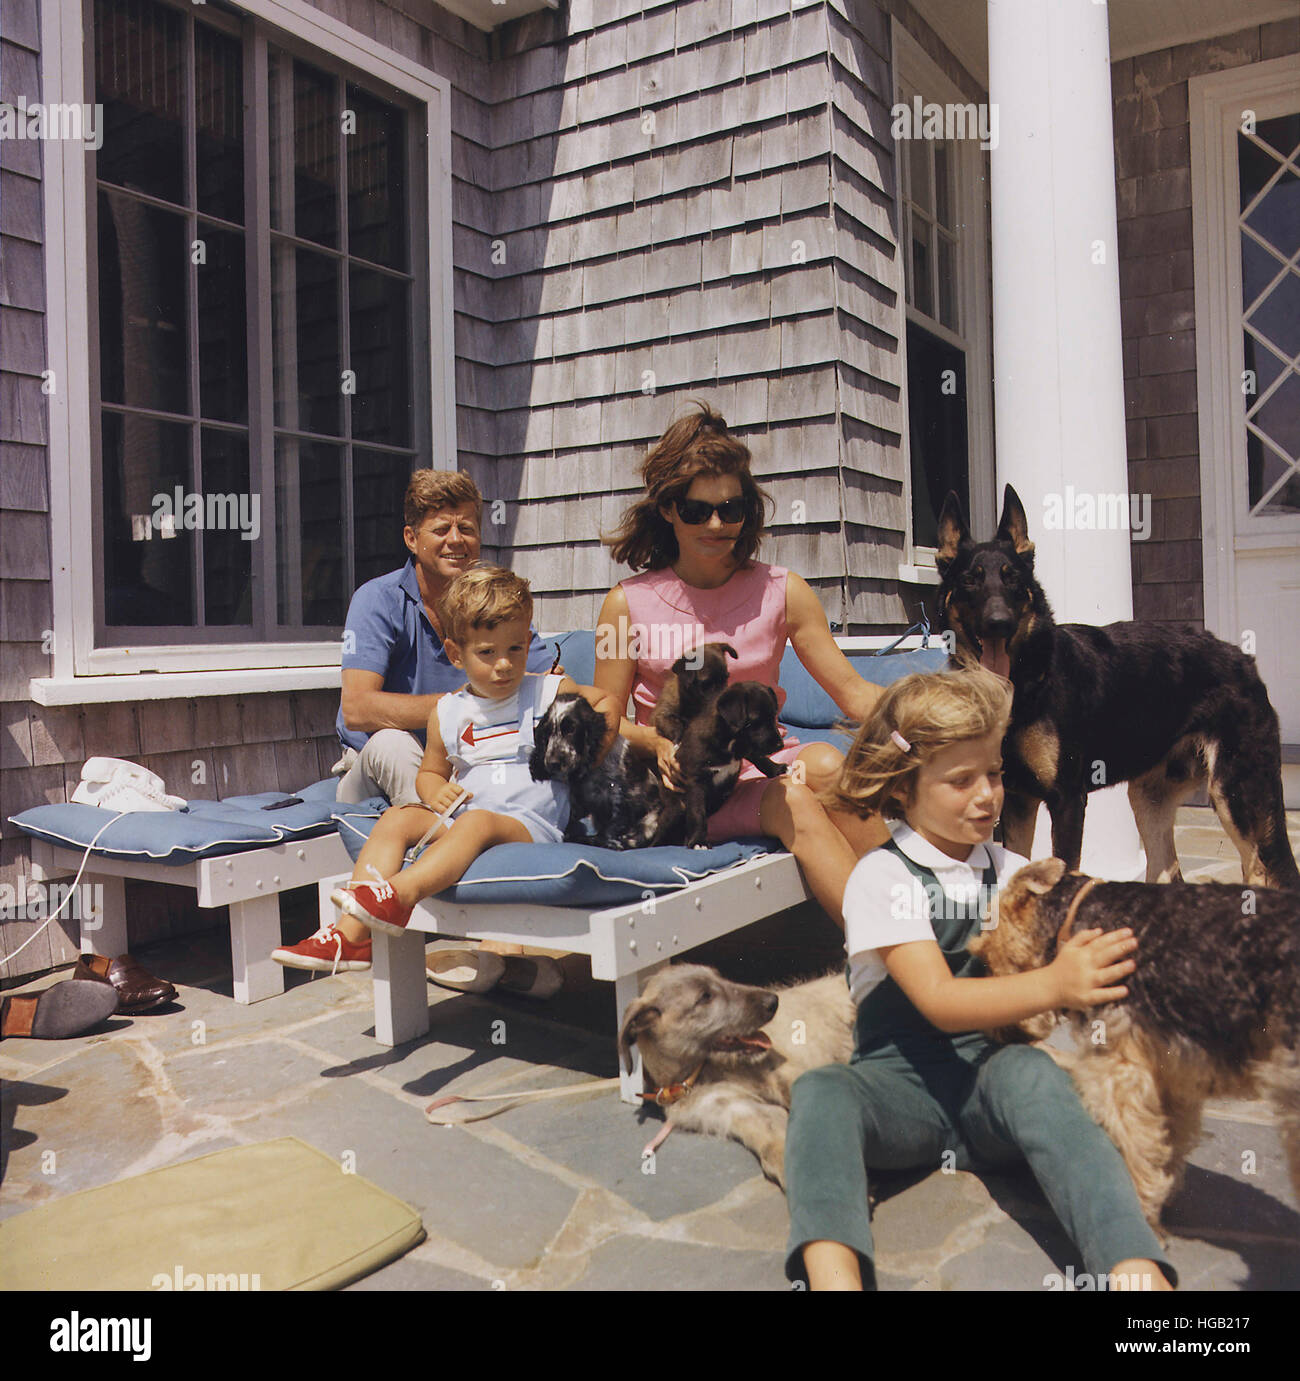 La famille Kennedy avec des chiens pendant un week-end en amoureux. Banque D'Images